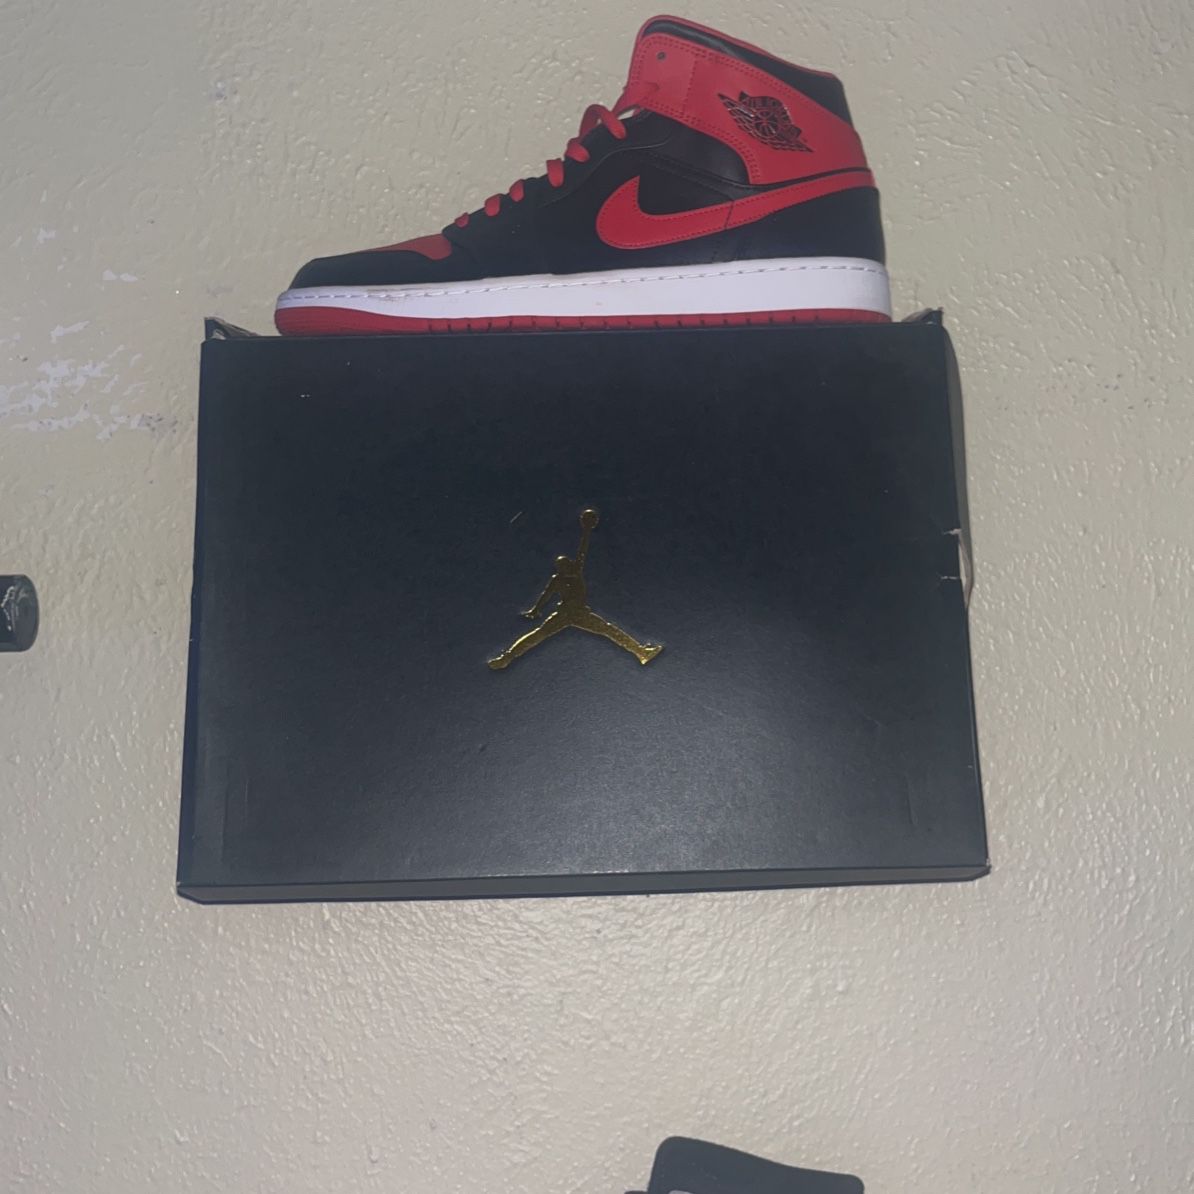 Red And Black Jordan 1s